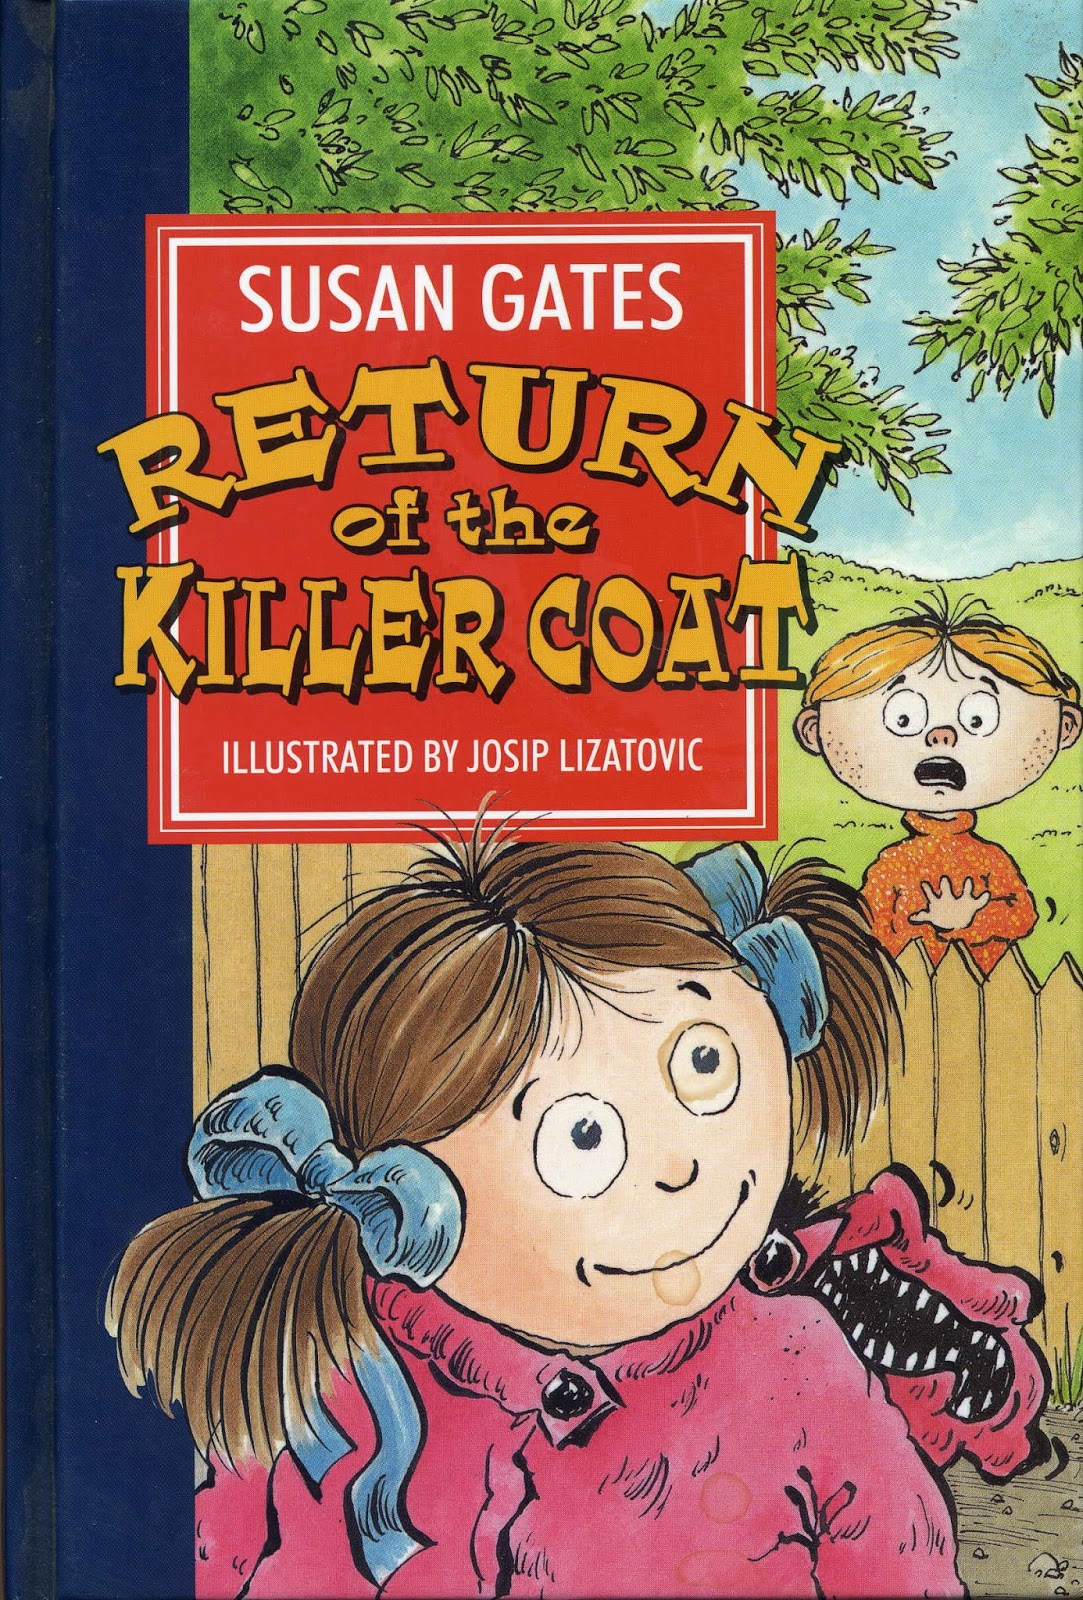 Susan Gates' Books Published: 1998